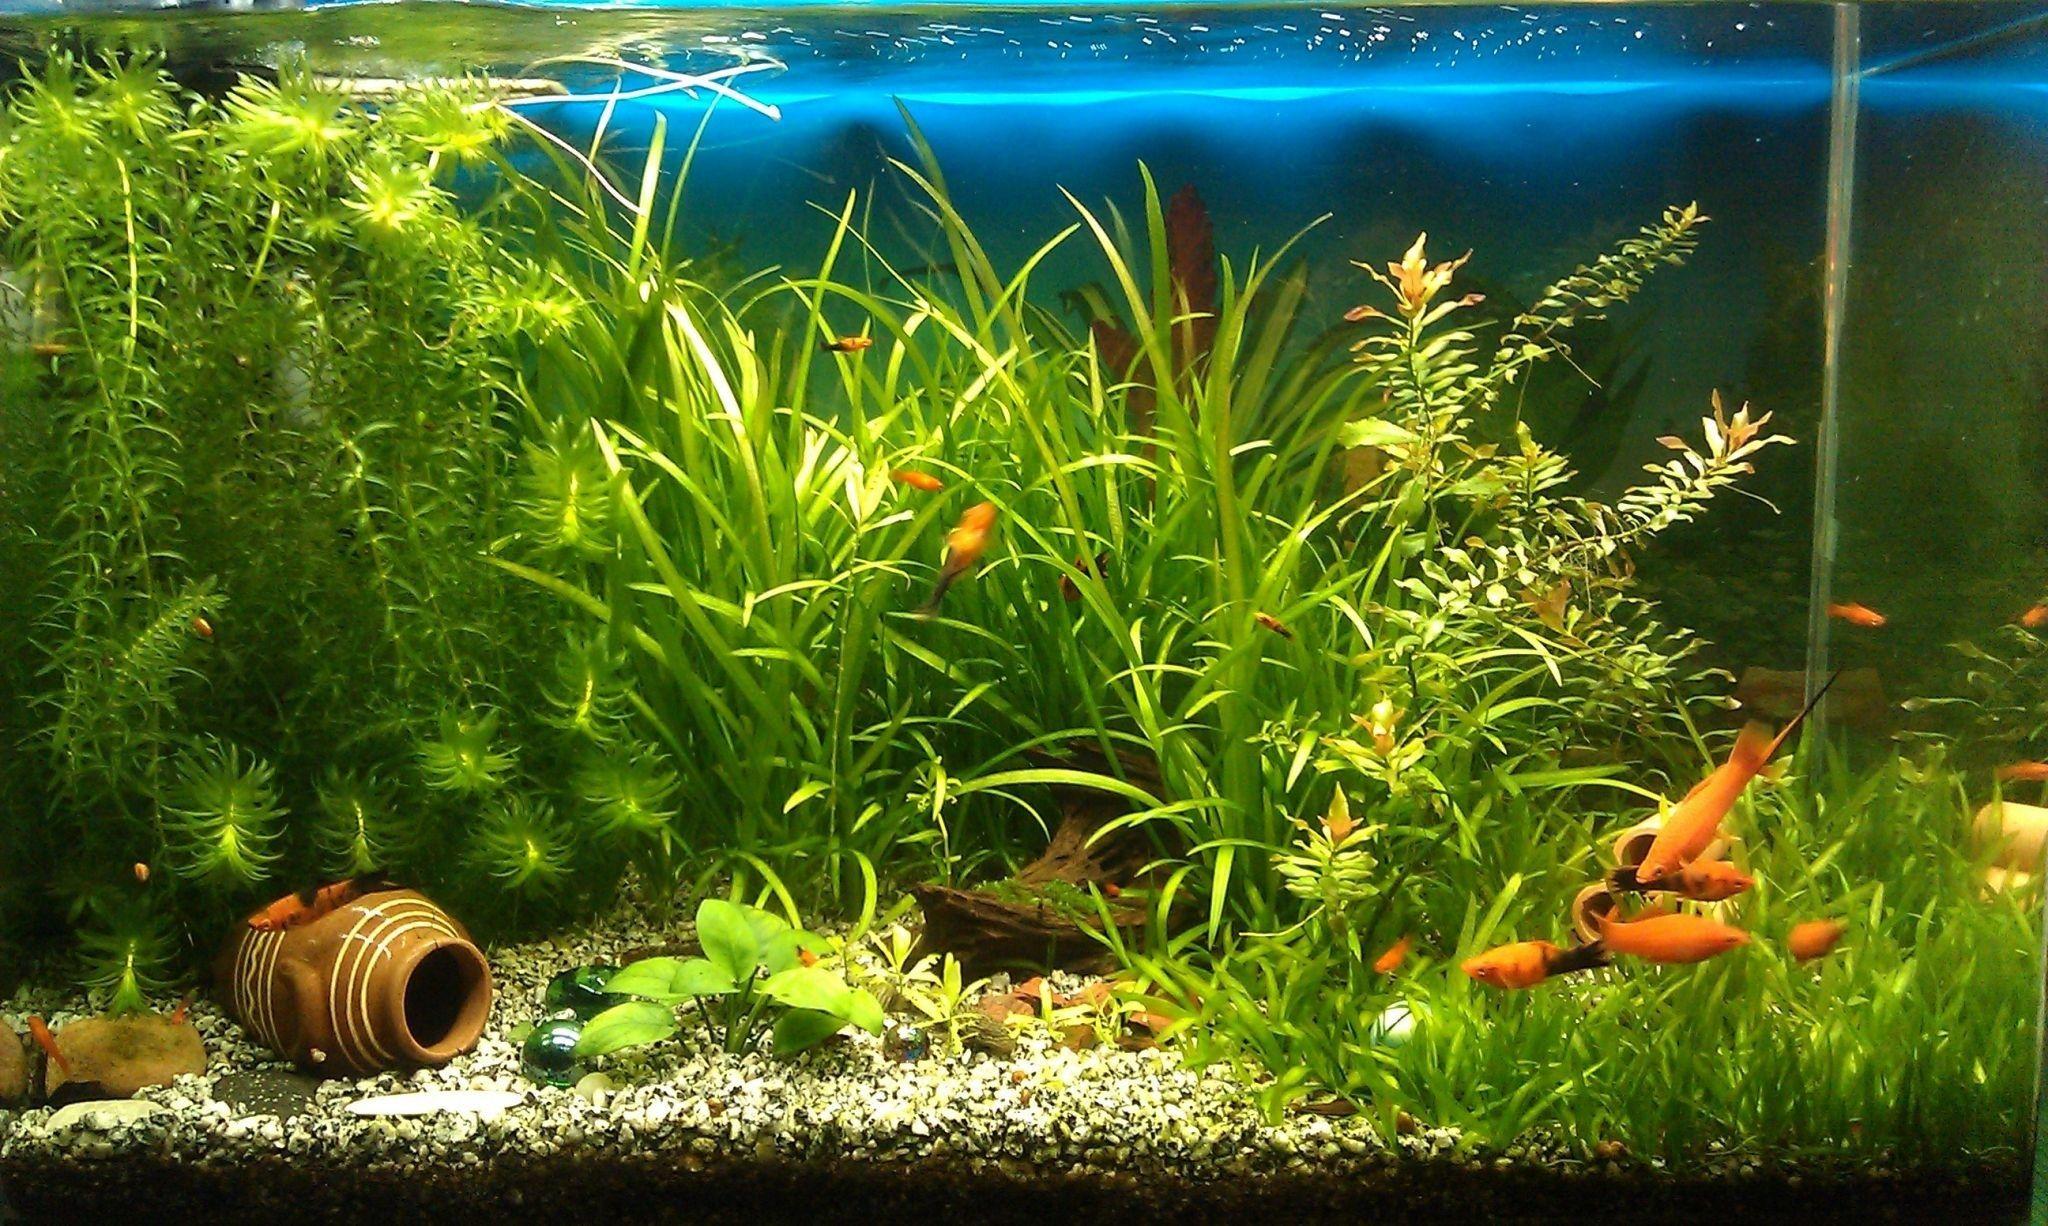 Aquarium tank colorful iPhone 11 Wallpapers Free Download